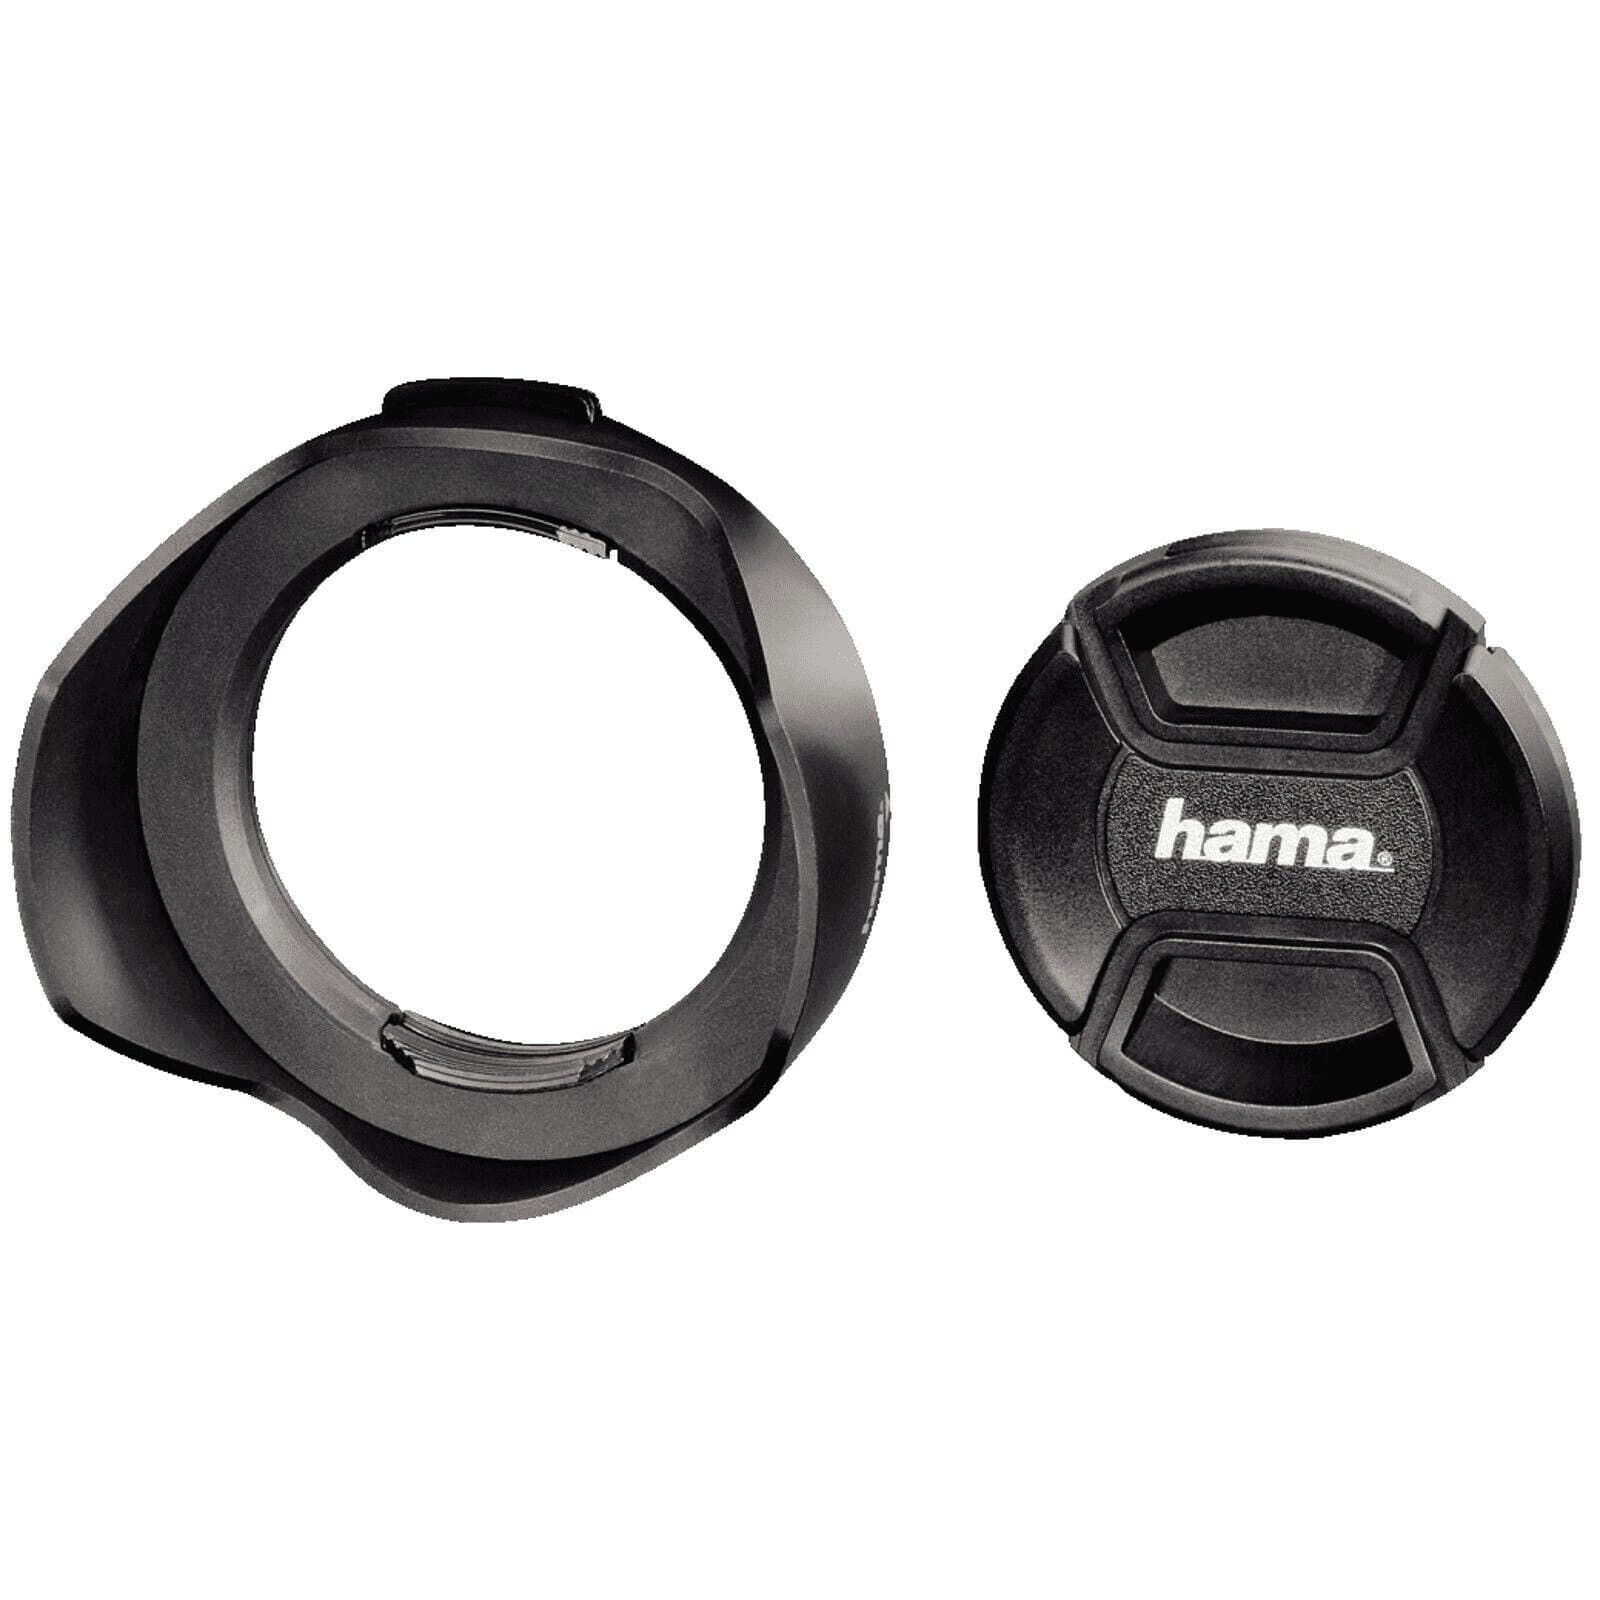 Hama Gegenlichtblende universal mit Objektivdeckel 77mm